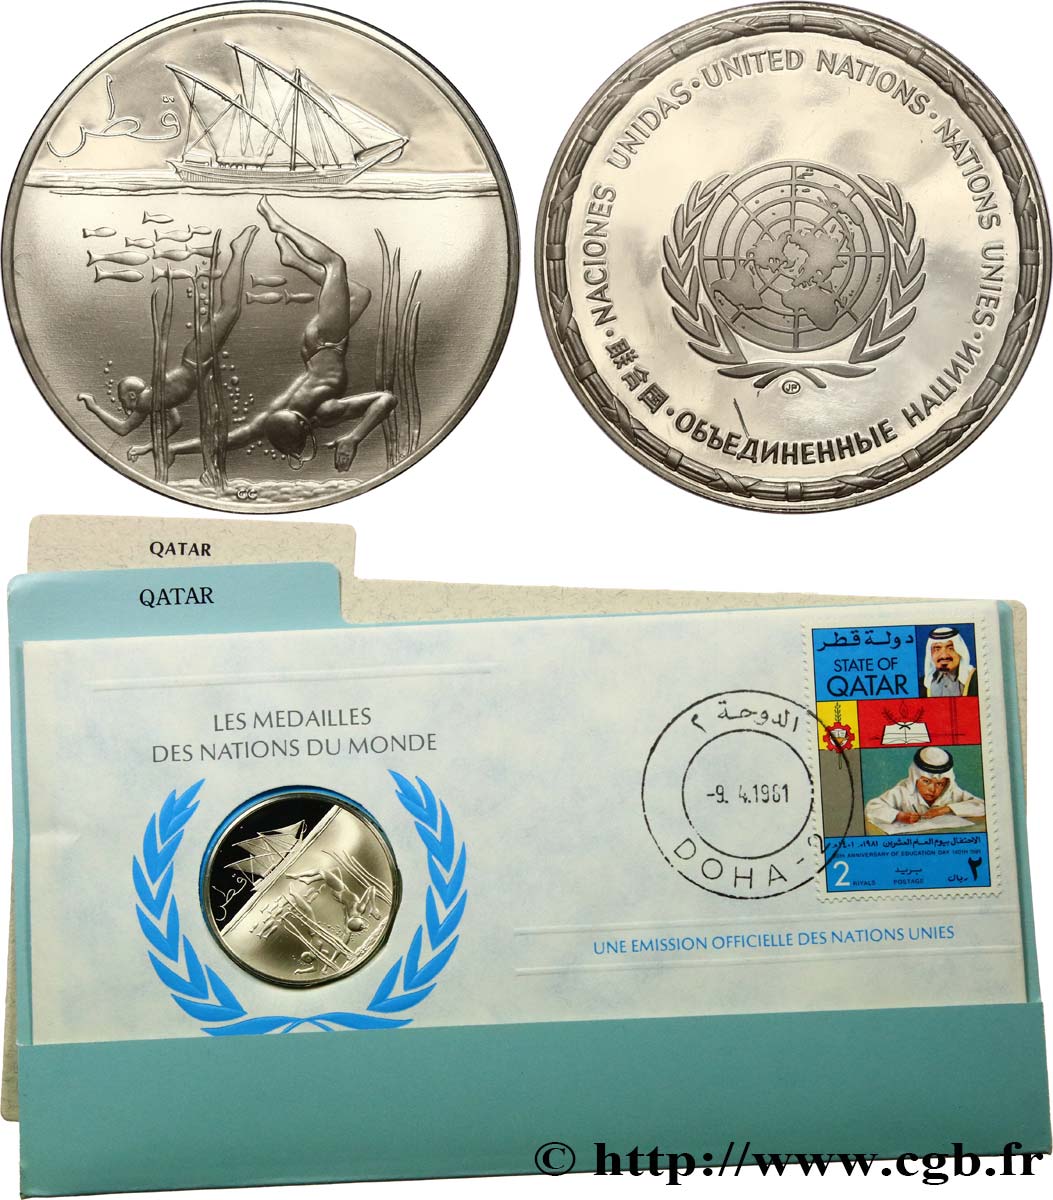 LES MÉDAILLES DES NATIONS DU MONDE Médaille, Qatar MS